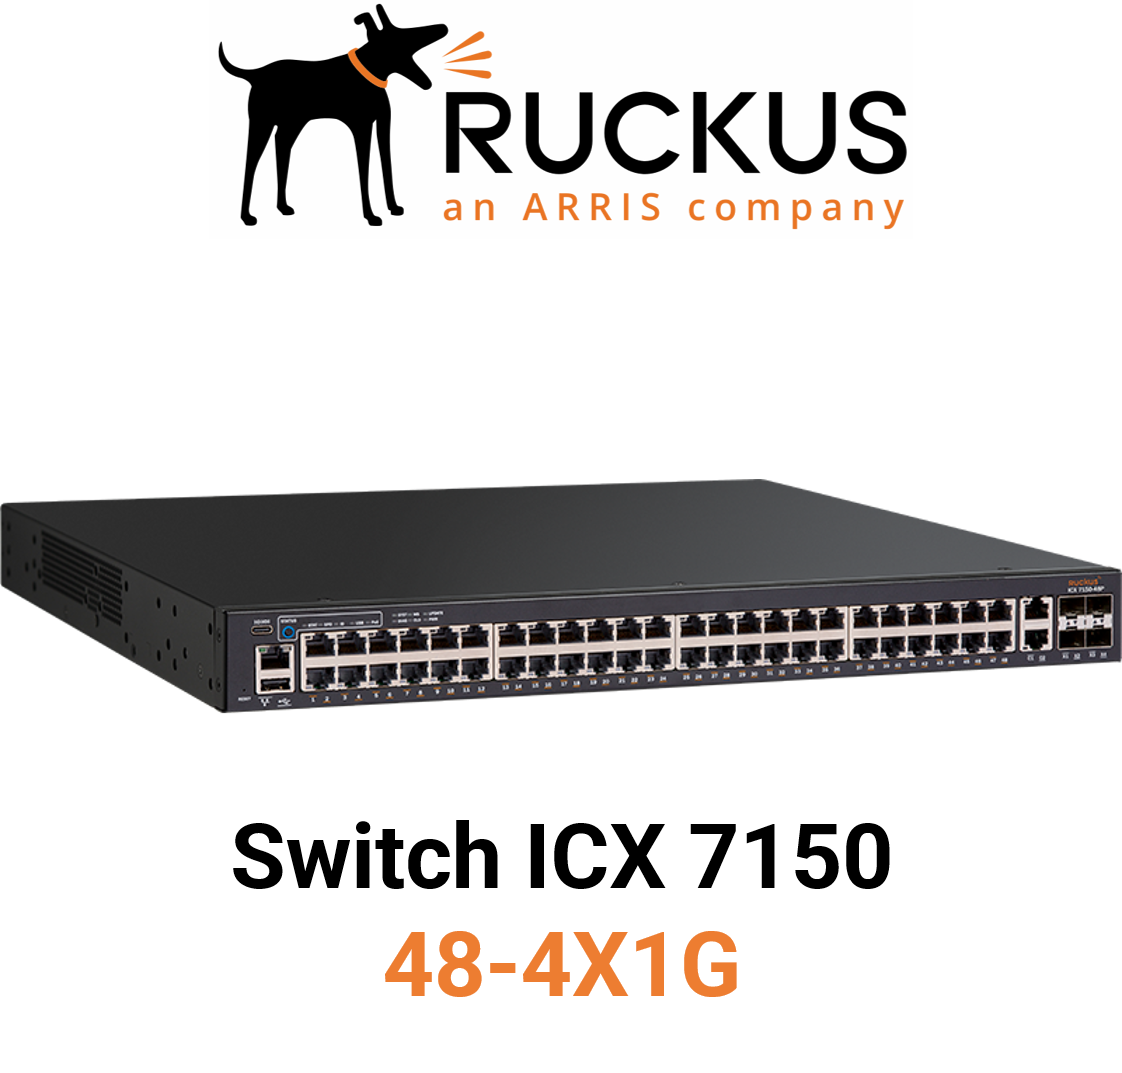 Ruckus ICX7150-48-4X1G Switch